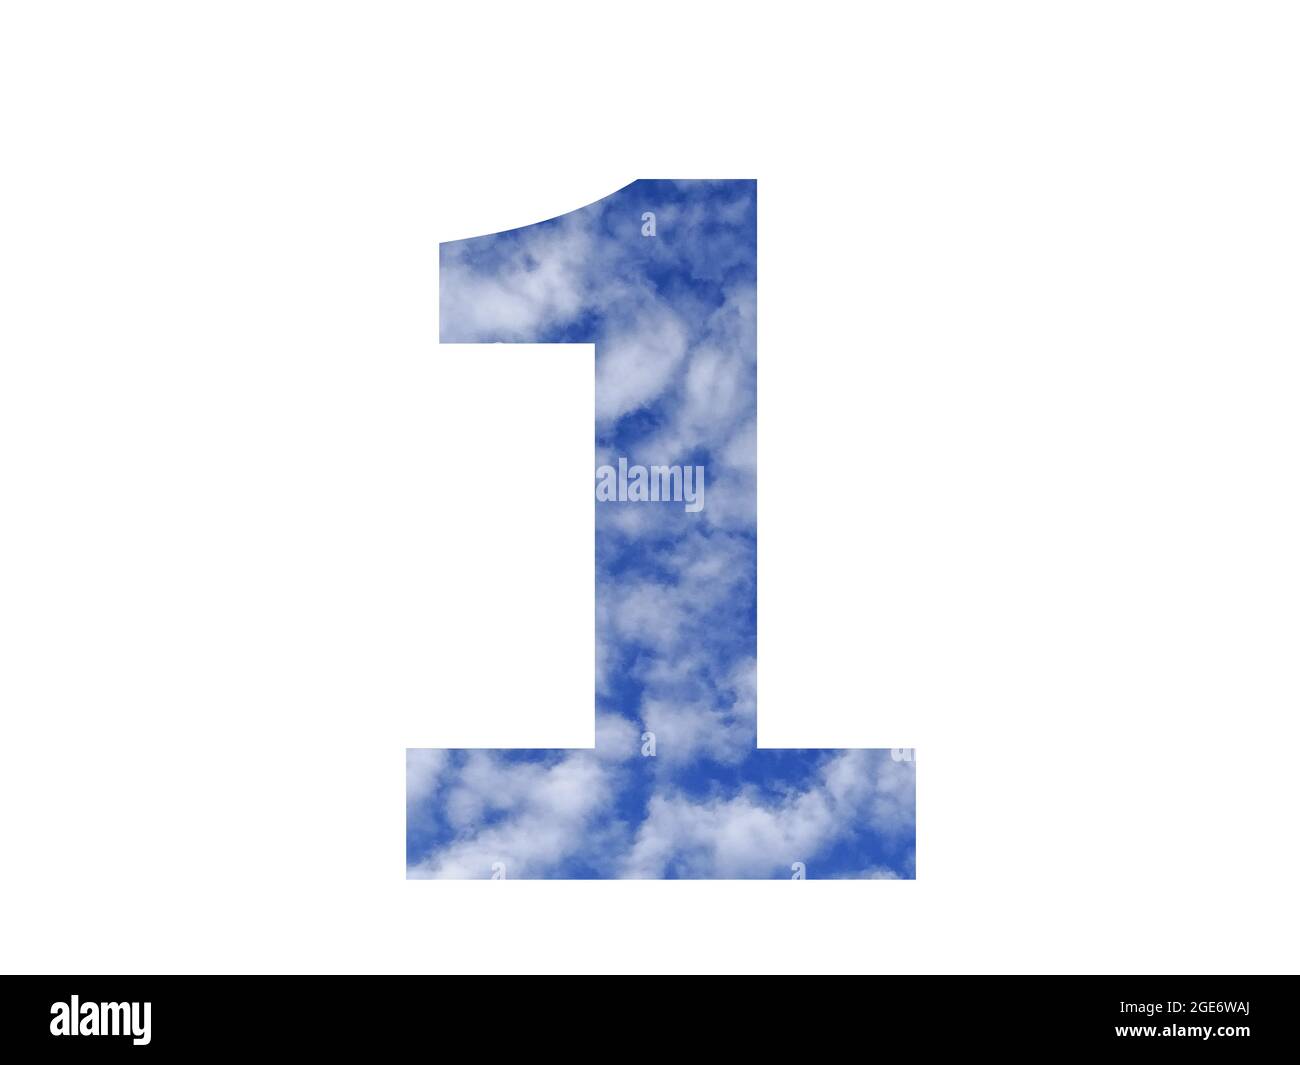 numero 1 dell'alfabeto fatto con cielo blu e nuvole bianche, isolato su sfondo bianco Foto Stock